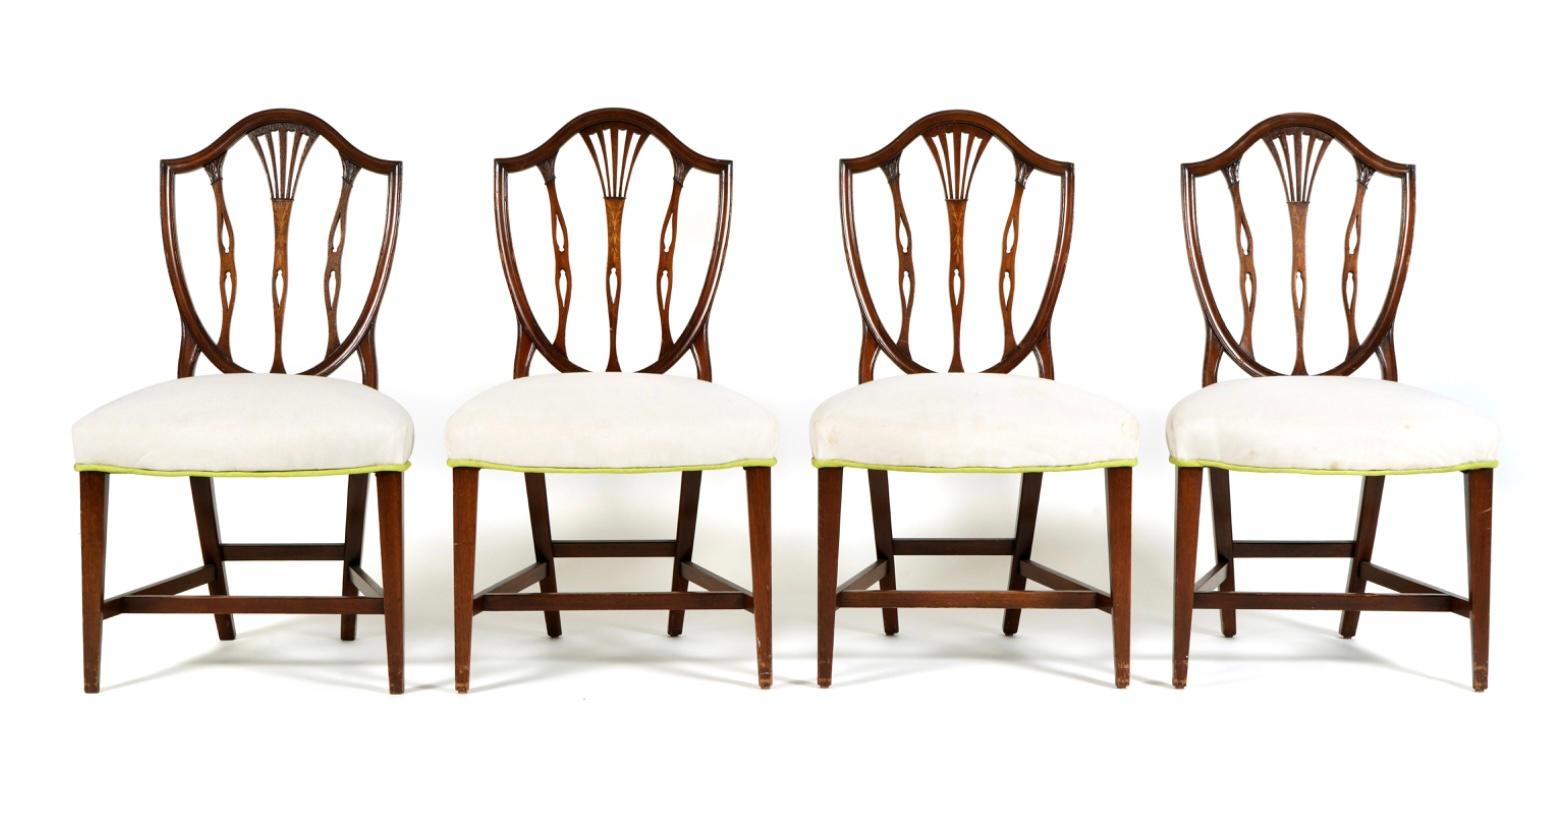 Ensemble de huit chaises de salle à manger Hepplewhite de la fin du XIXe siècle, deux chaises avec accoudoirs et six chaises d'appoint. Les chaises sont sculptées et moulées avec des dossiers en bouclier américain avec une incrustation florale au